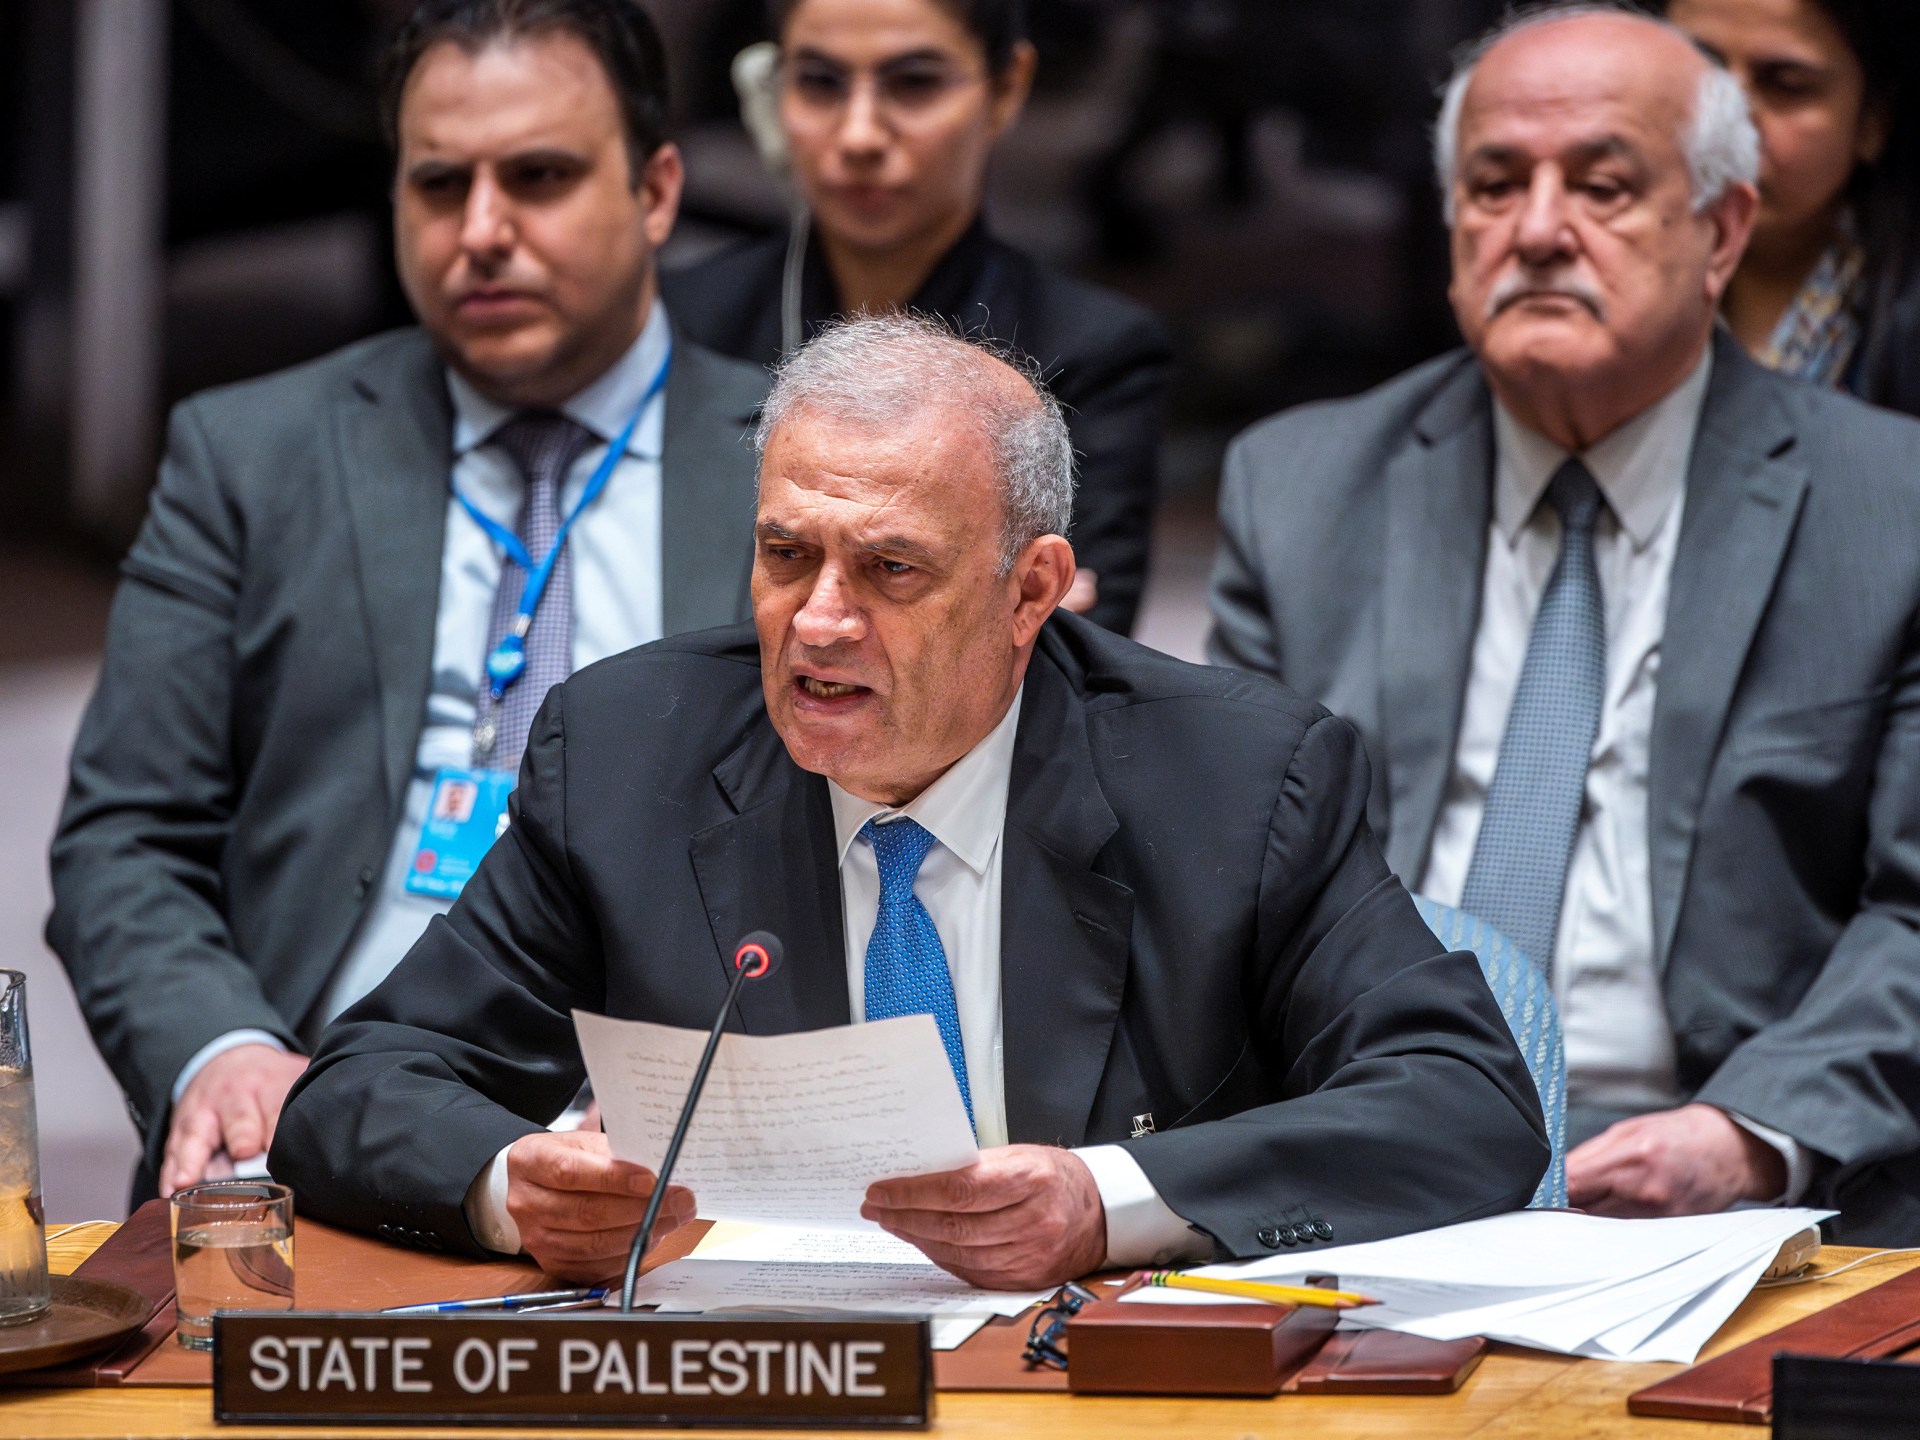 Presentare la candidatura palestinese all'adesione alle Nazioni Unite al voto del Consiglio di Sicurezza  Notizie delle Nazioni Unite